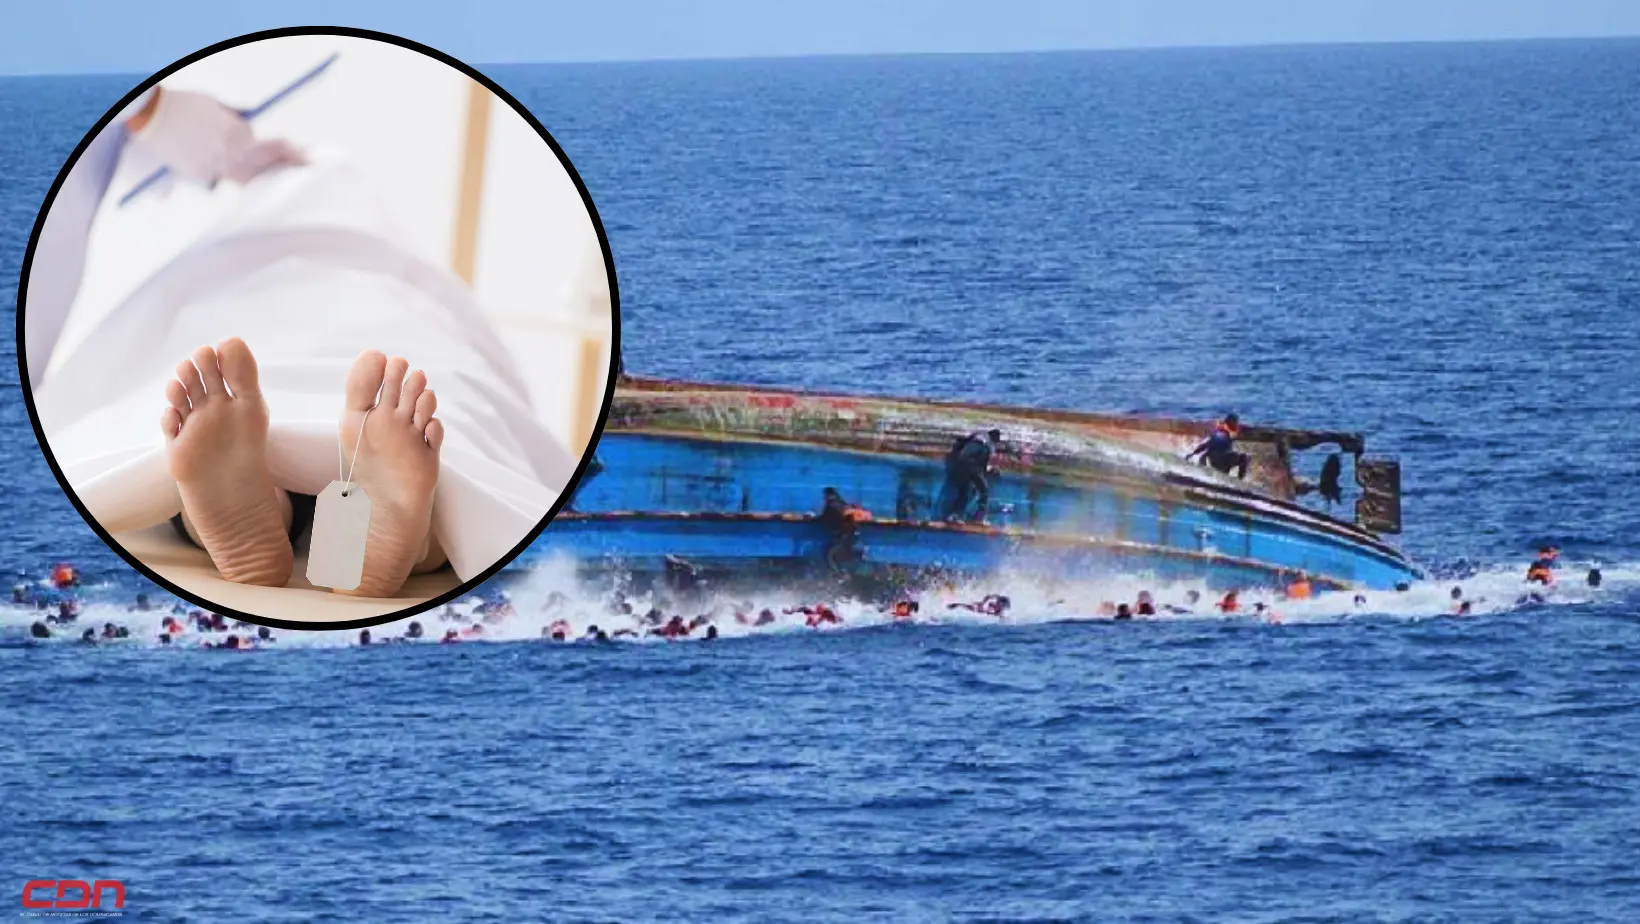 Mueren 49 migrantes en un naufragio en las costas de Yemen. Foto: Fuente externa